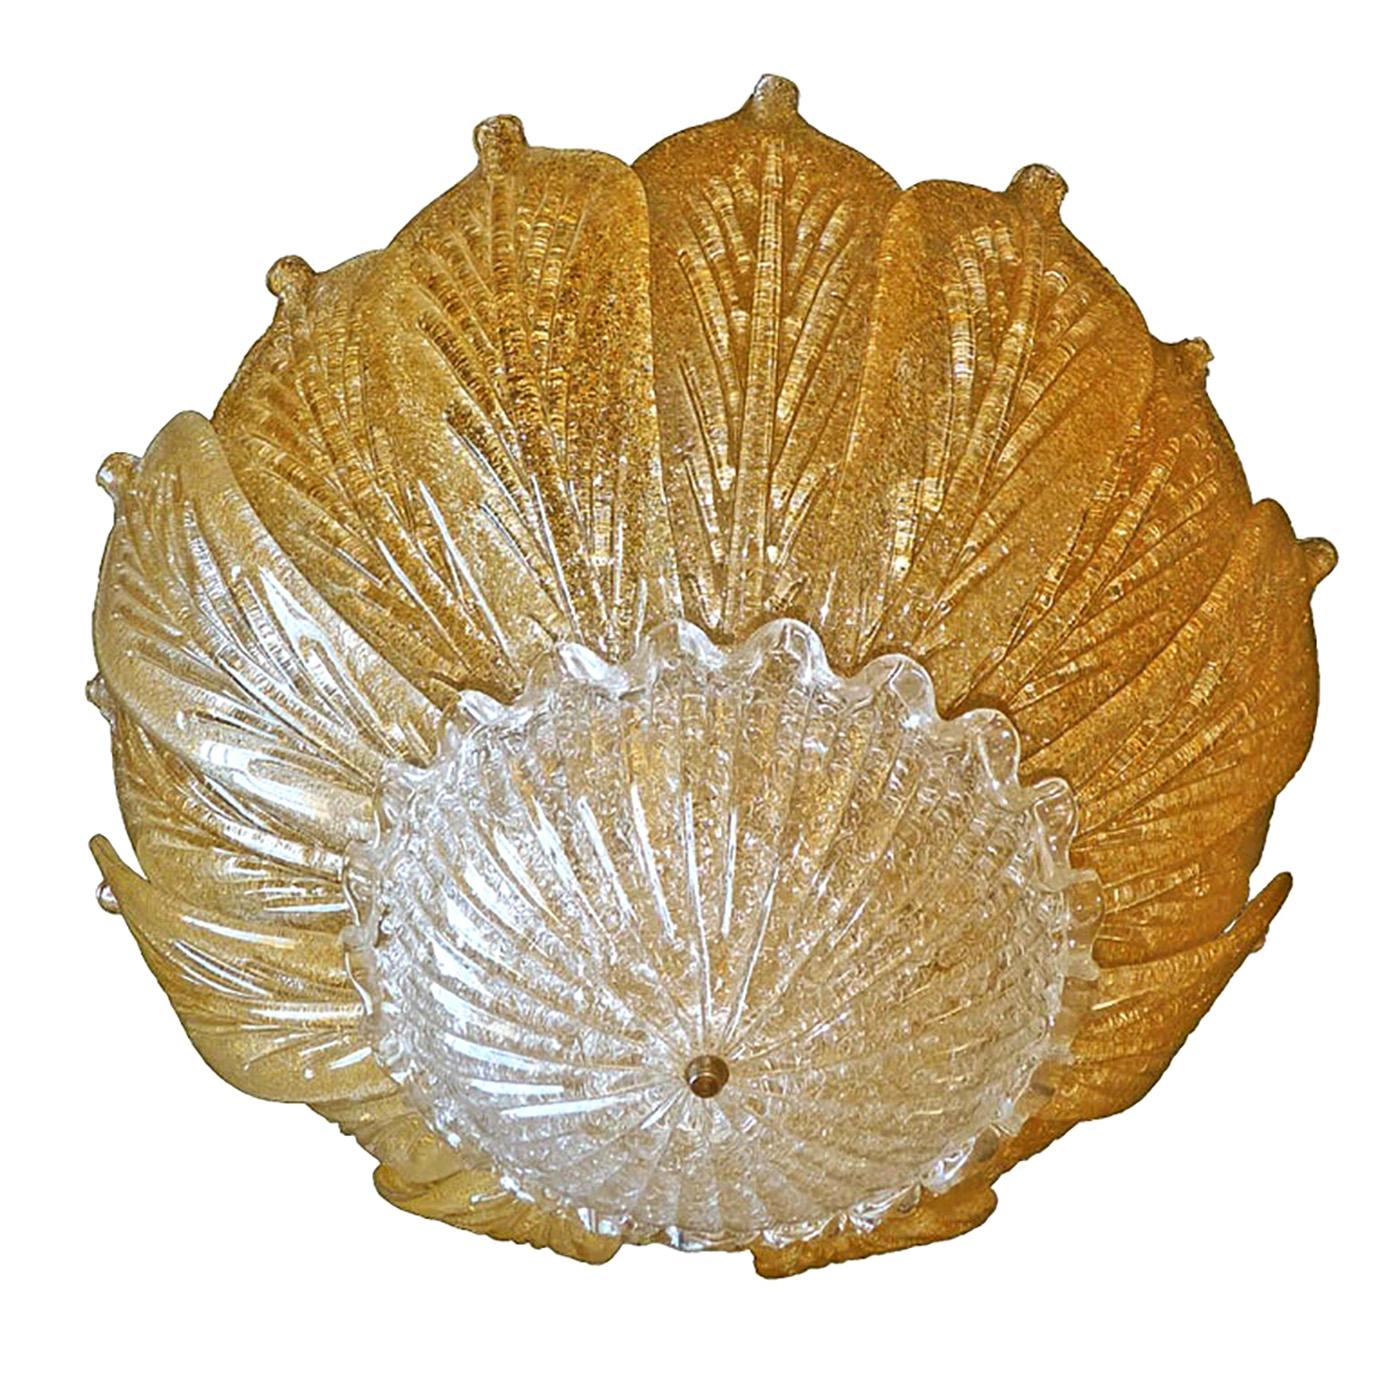 Beeindruckender und seltener venezianischer Muranokronleuchter mit 16 Blatt Gold, Barovier & Toso zugeschrieben, um 1980. Handgeblasenes, strukturiertes, funkelndes Kristallglas mit Goldeinschlüssen. Diese wunderschöne Leuchte wird von einer